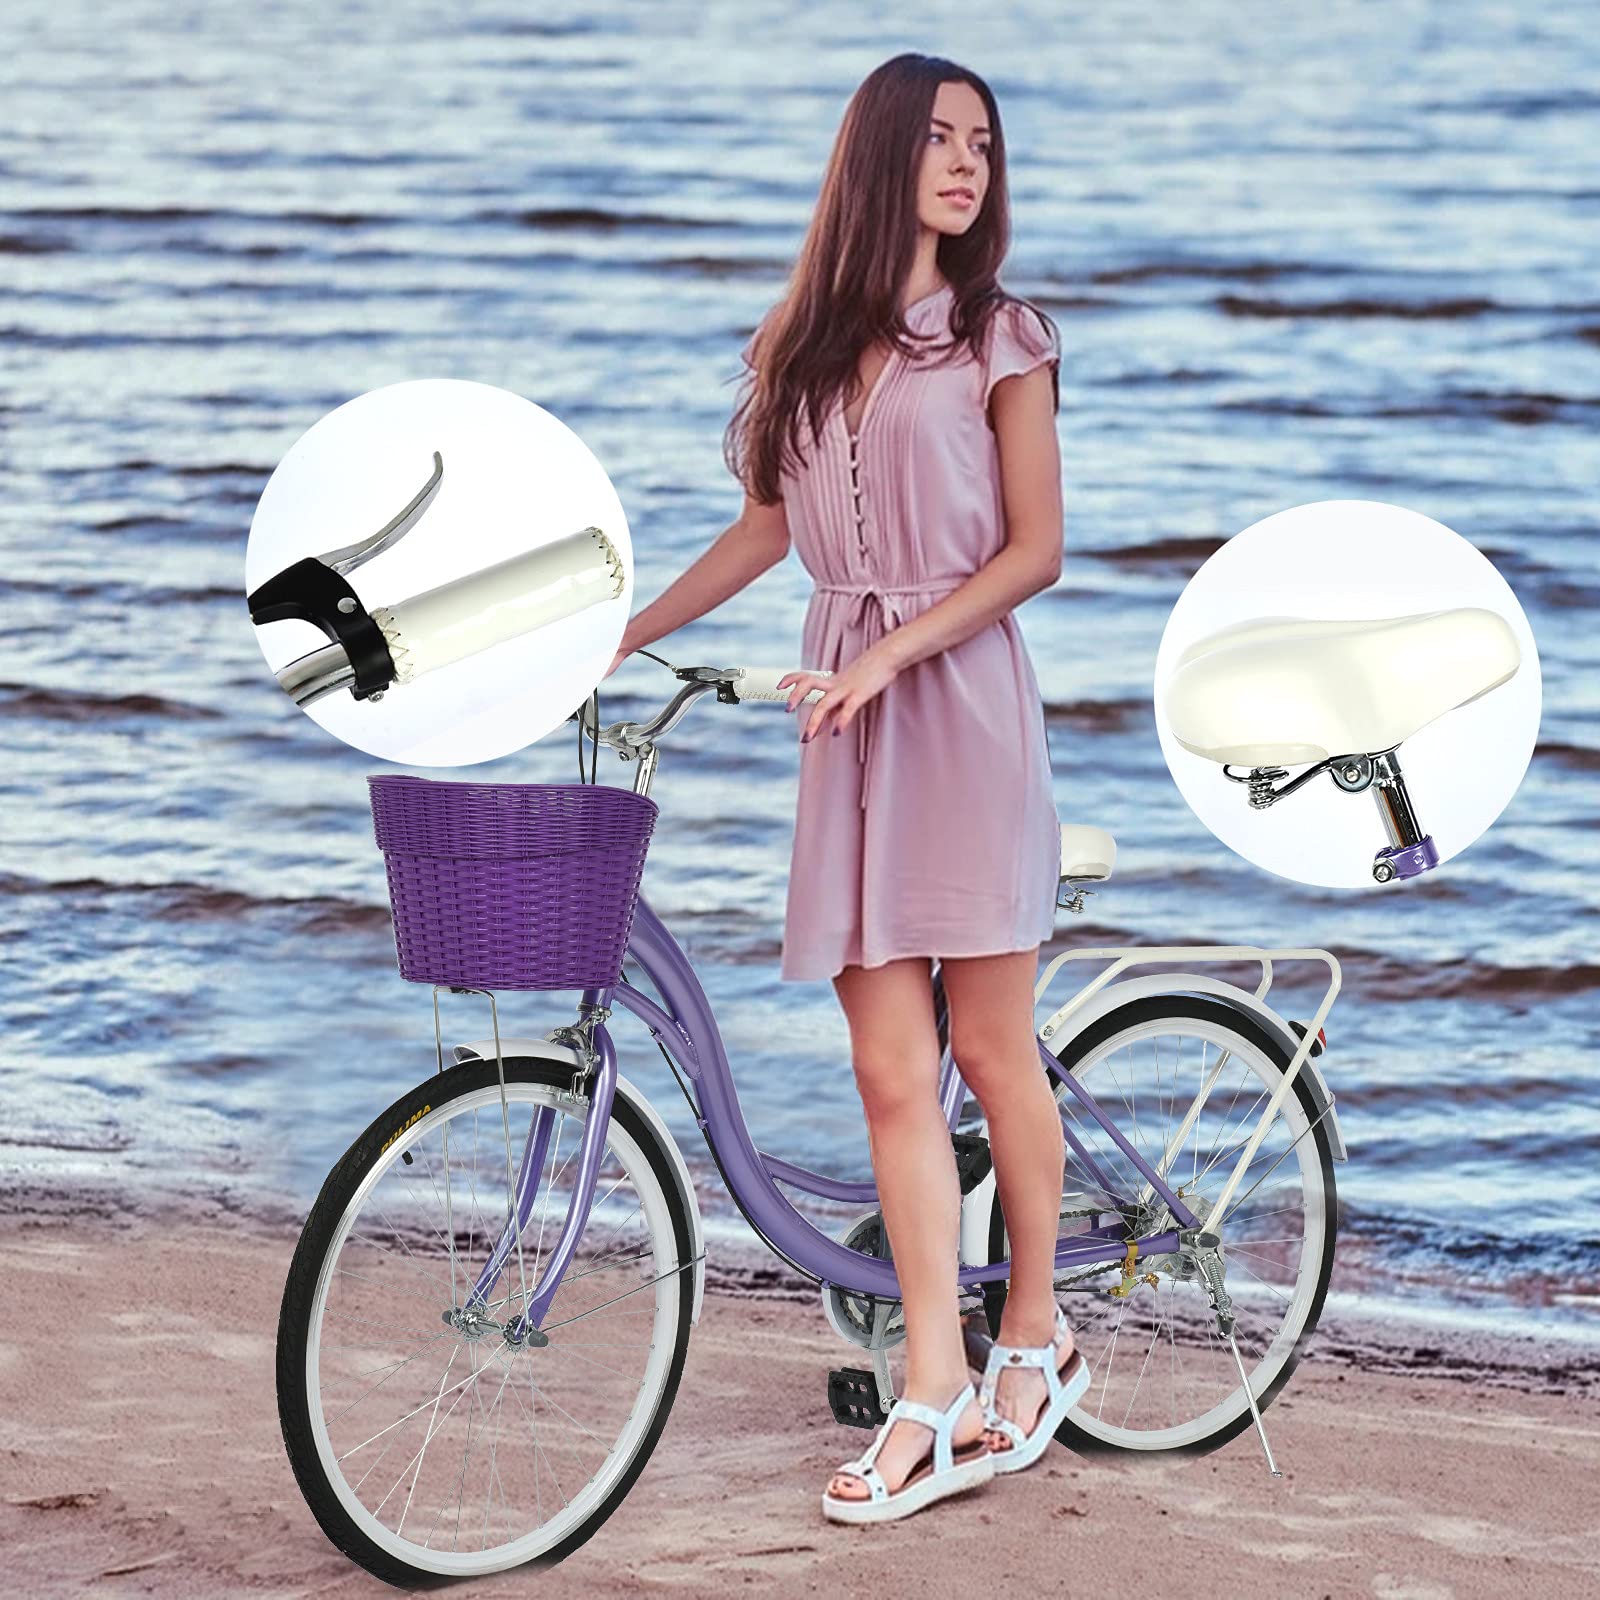 26-Inch Womens Comfort Bikes Beach Cruiser Bike Single Speed Bicycle